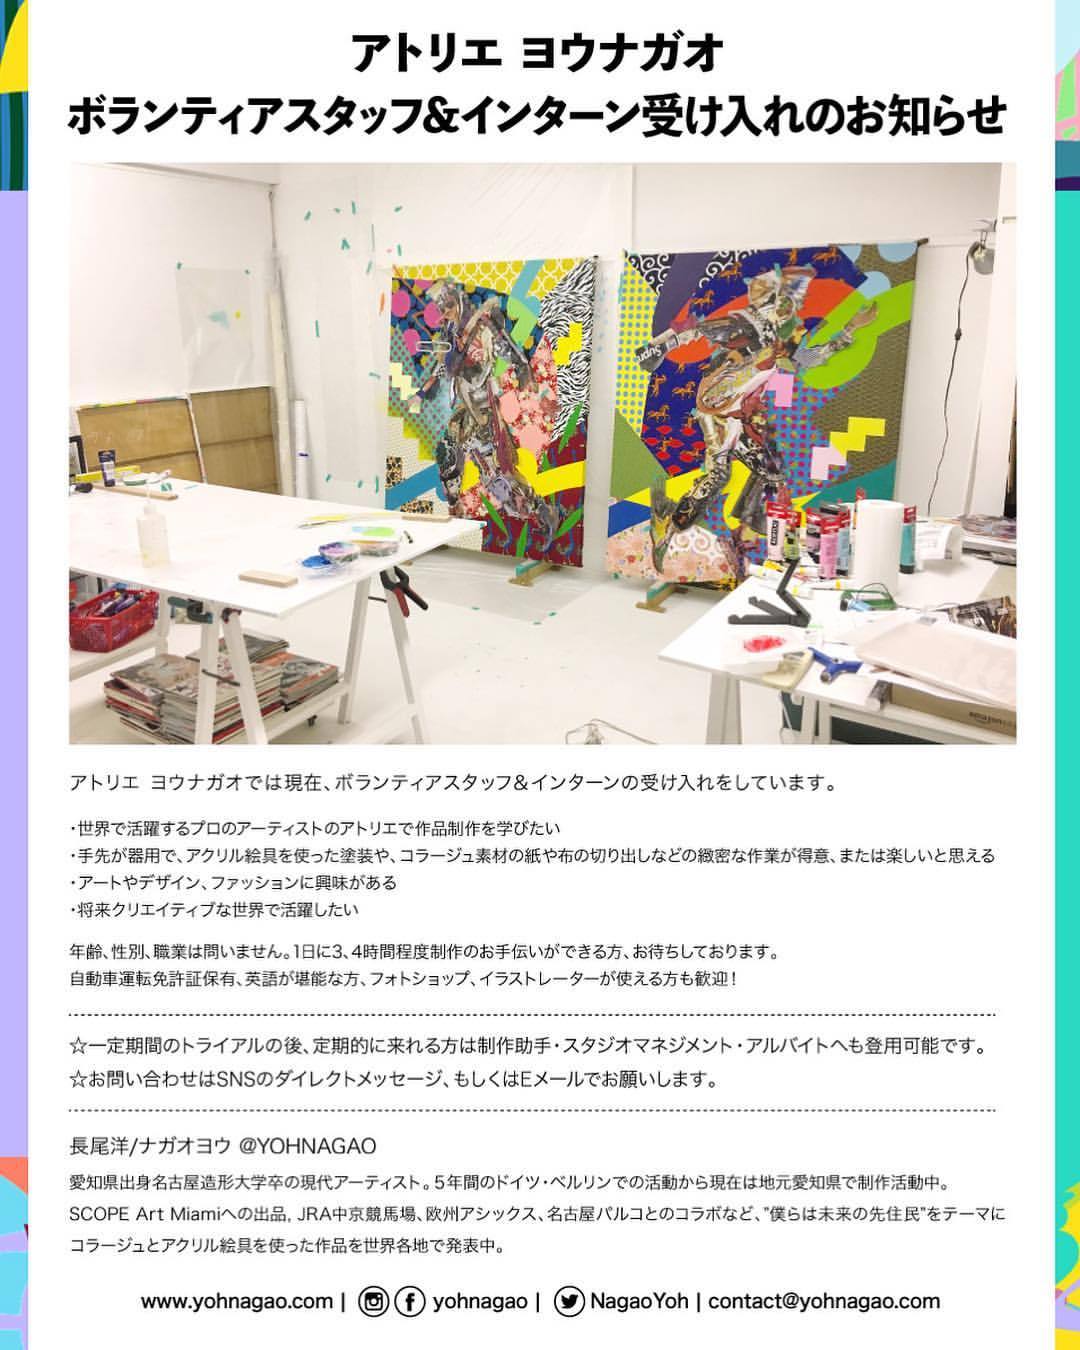 Yoh Eats Yogurt Welcome Volunteers Interns To My Studio In Japan